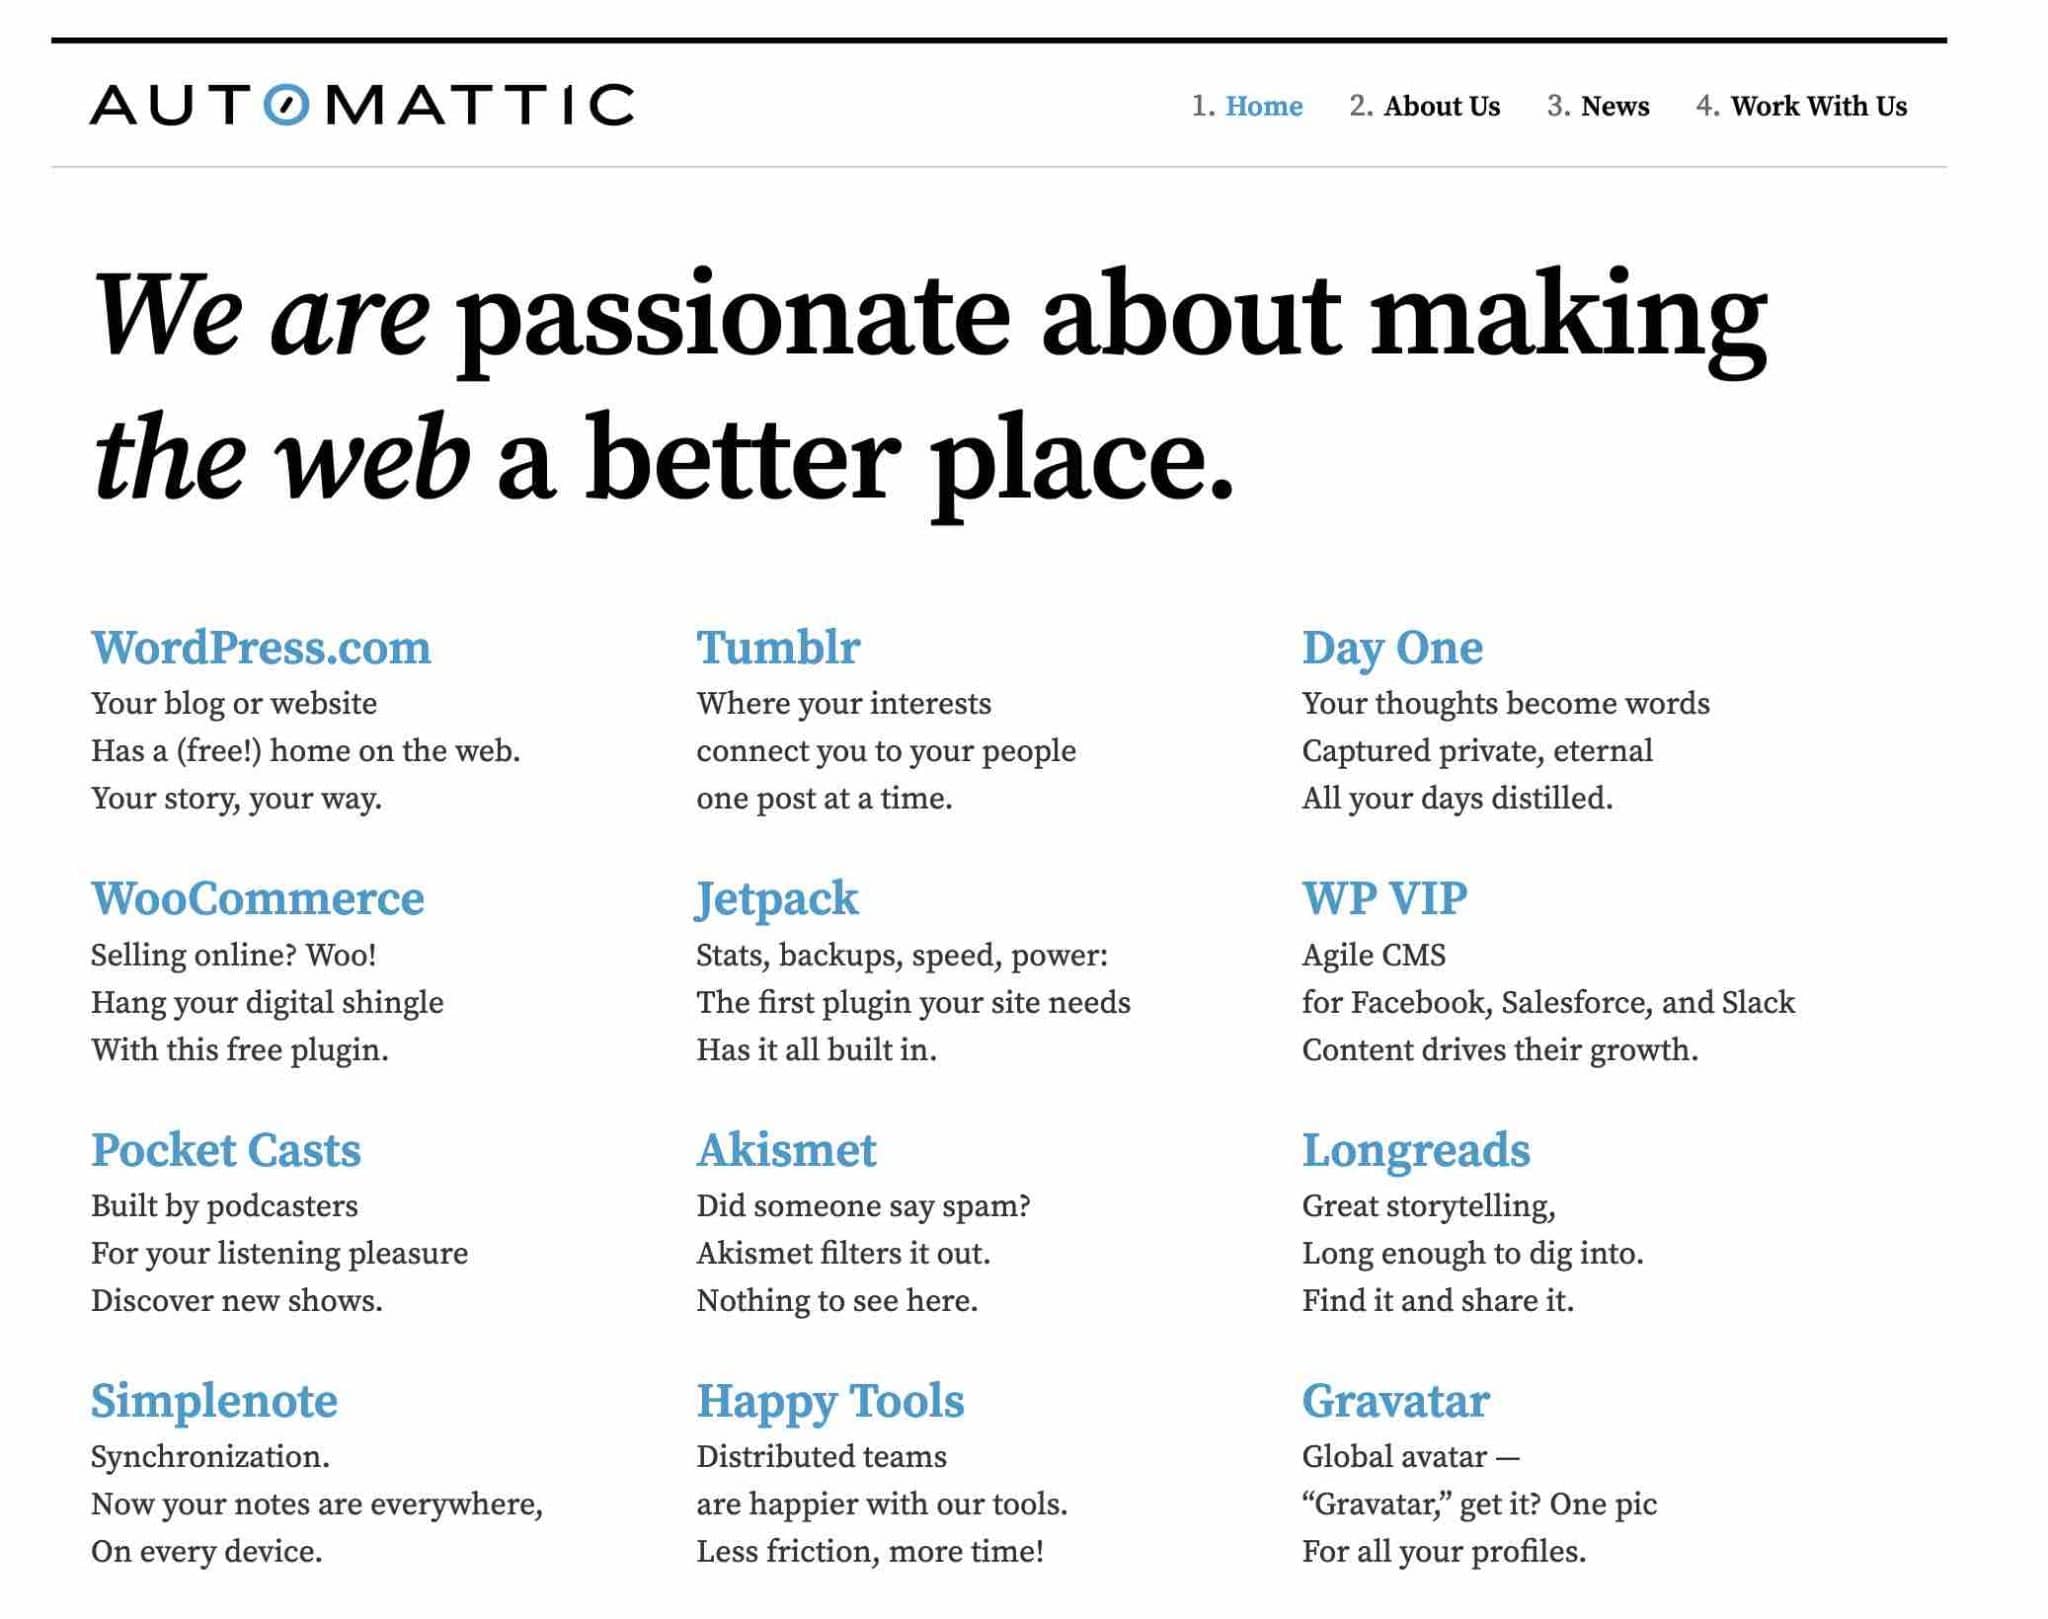 Le site d'Automattic, l'entreprise qui contribue le plus à WordPress.